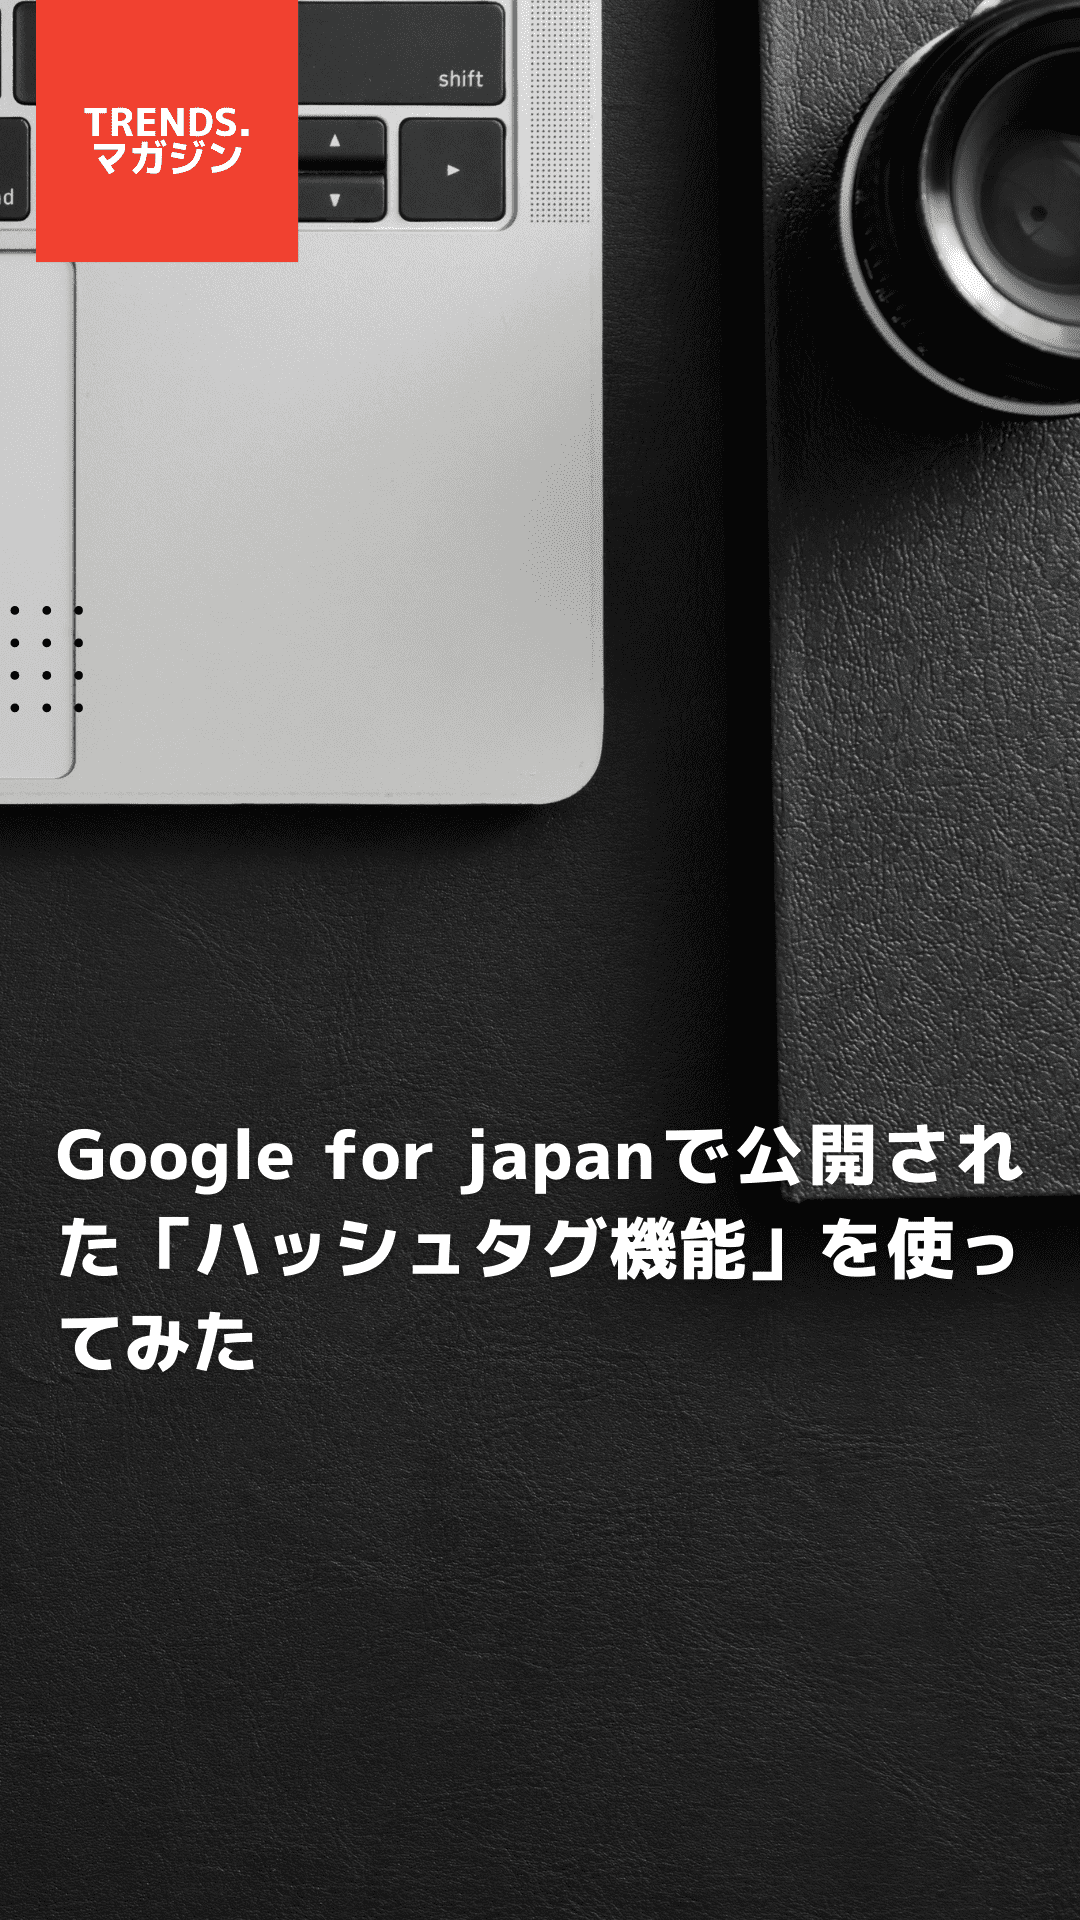 Google for japanで公開された「ハッシュタグ機能」を使ってみた